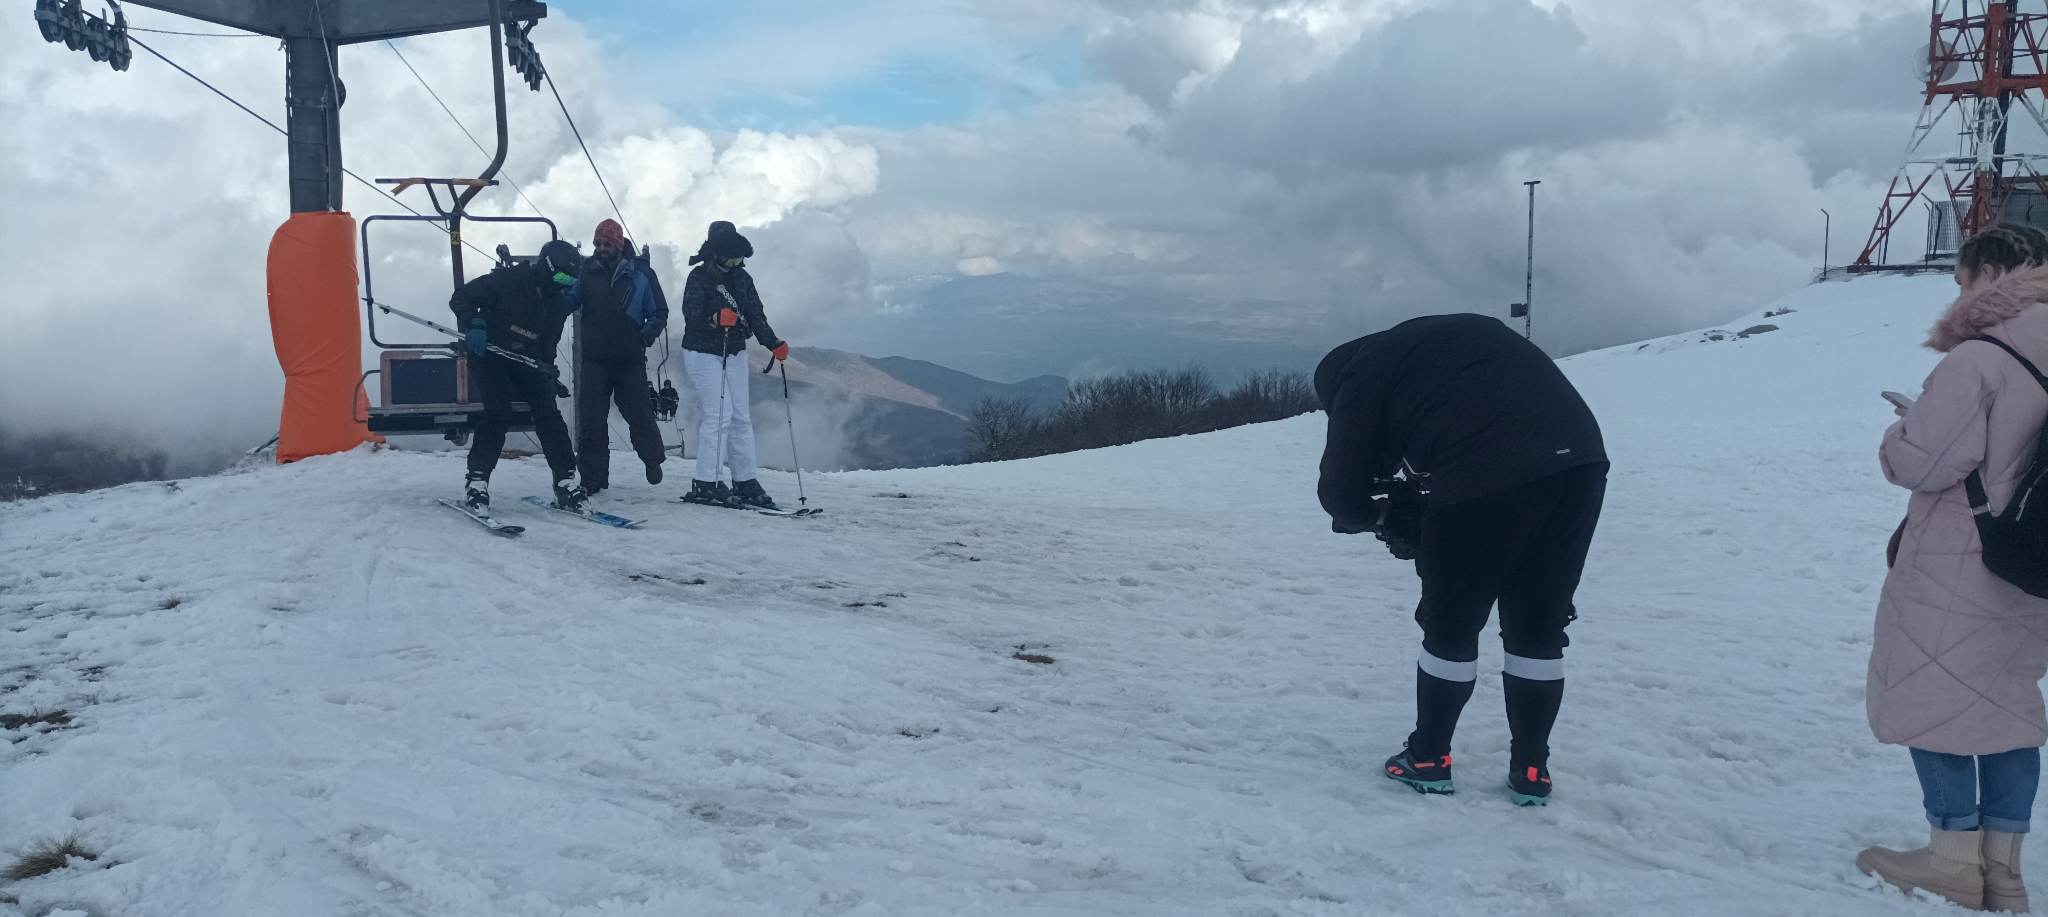 Ταξίδι εξοικείωσης για την προβολή των χειμερινών προορισμών που διαθέτουν χιονοδρομικά κέντρα στο ταξιδιωτικό κοινό της Ρουμανίας -4-